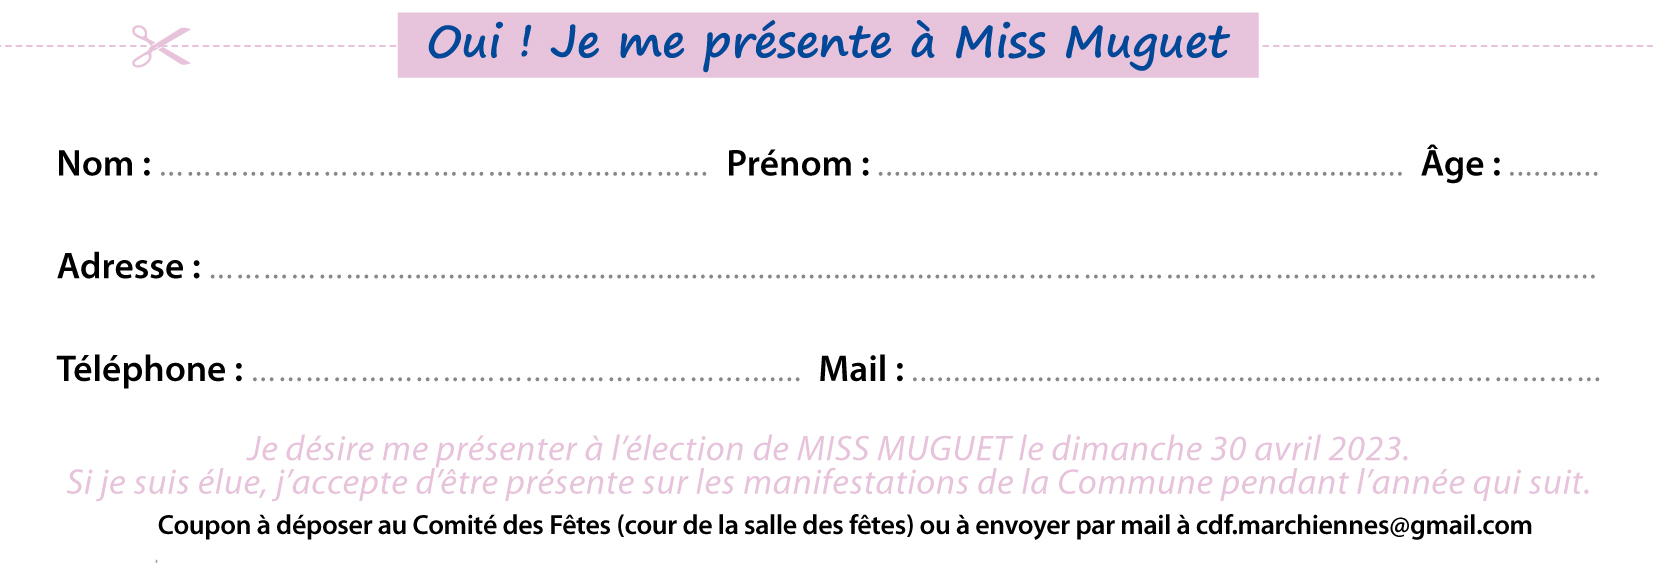 Coupon Miss Muguet.jpg